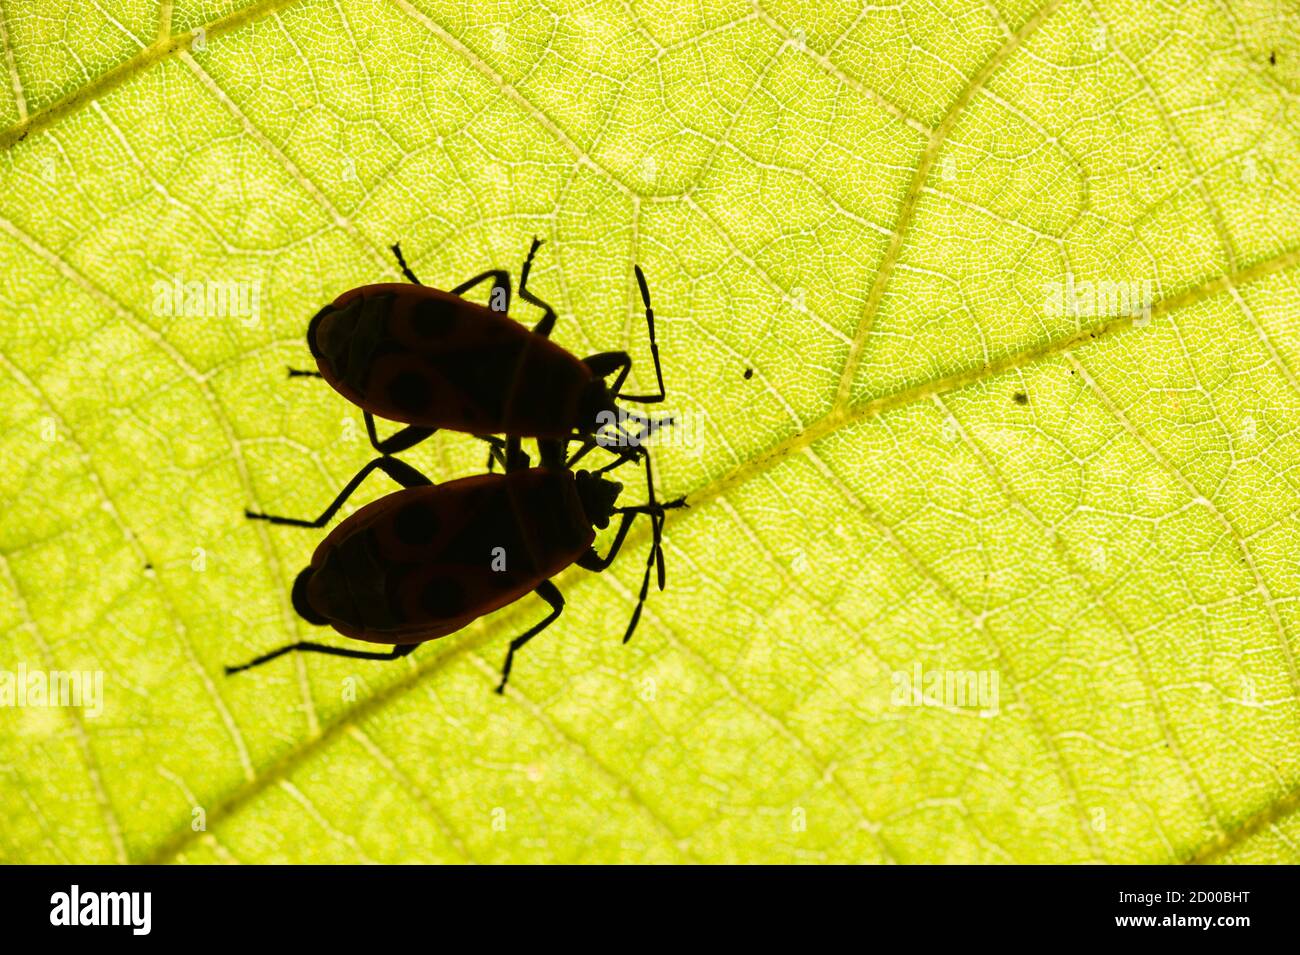 feuerbug, Pyrrhocoris apterus, gemeines Insekt der Familie Pyrrhocoridae, unter einem Blatt. Stockfoto